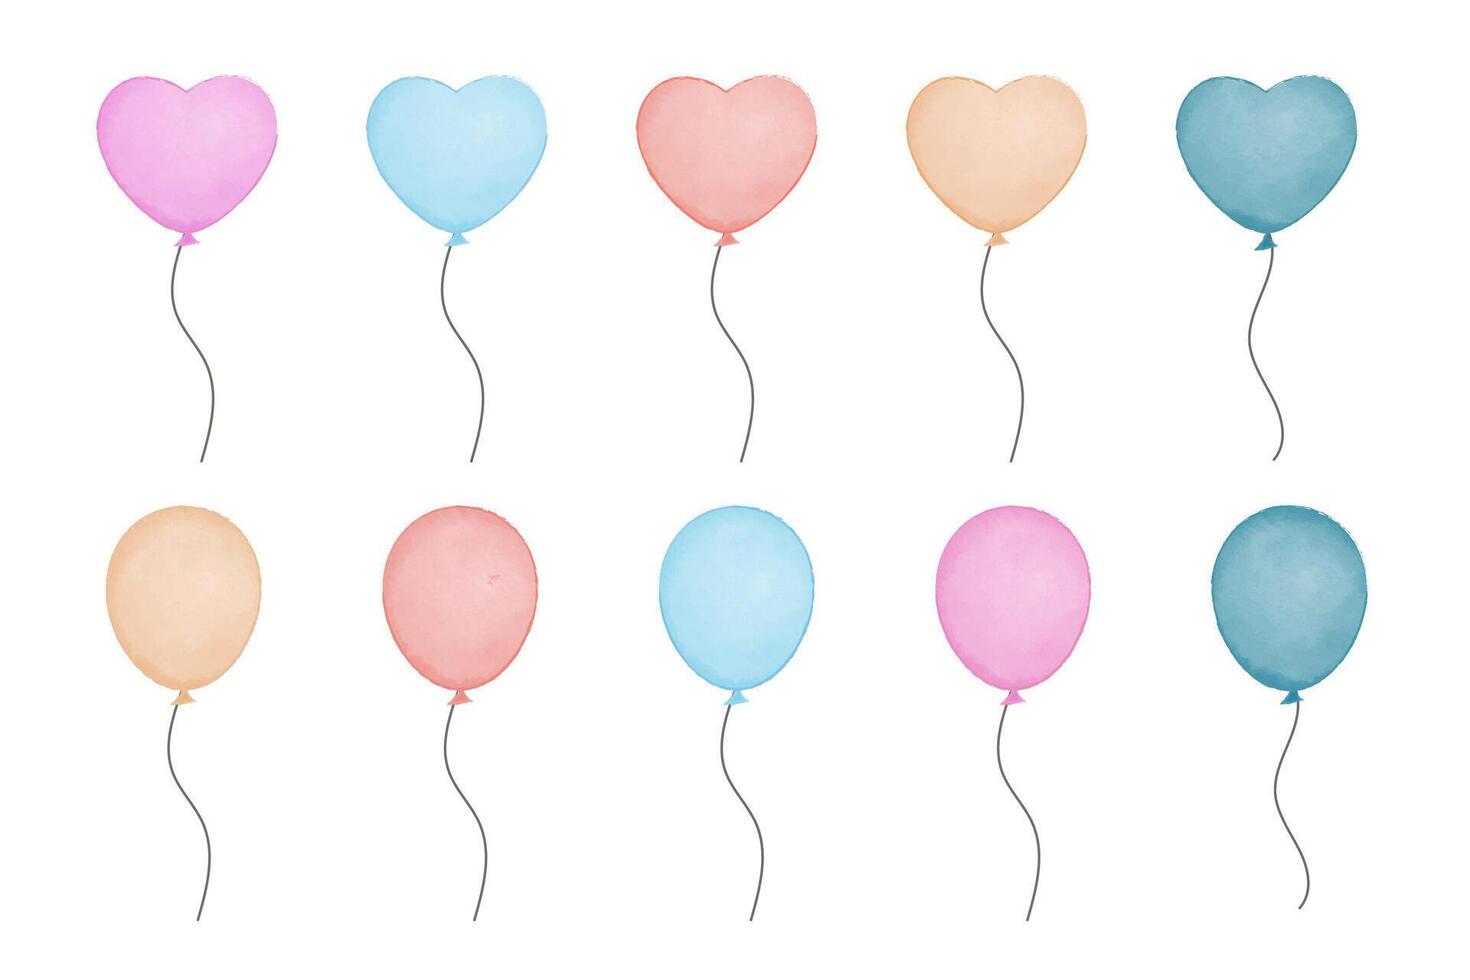 kaarten voor uitnodiging, verjaardag. waterverf ballonnen illustratie vector